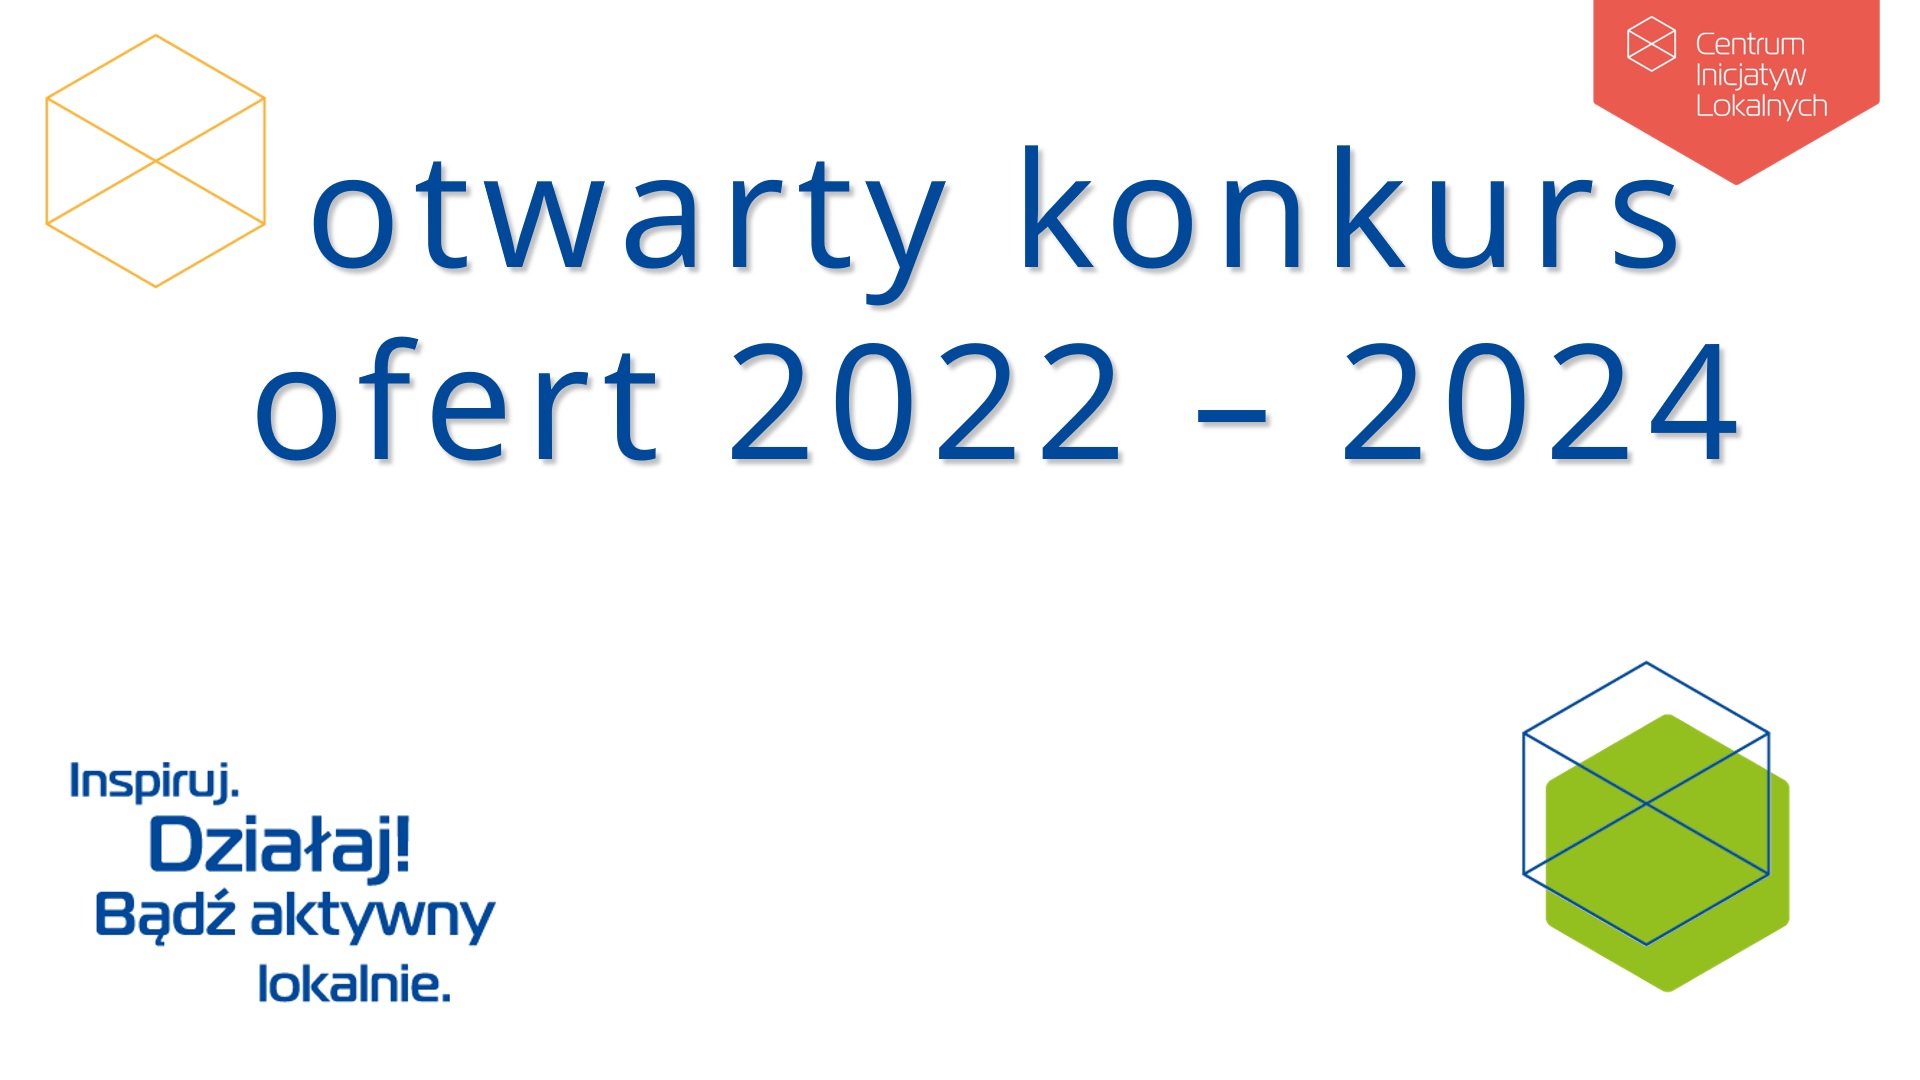 zdjęcie z informacją o temacie spotkania - otwarty konkurs ofert 2022 - 2024